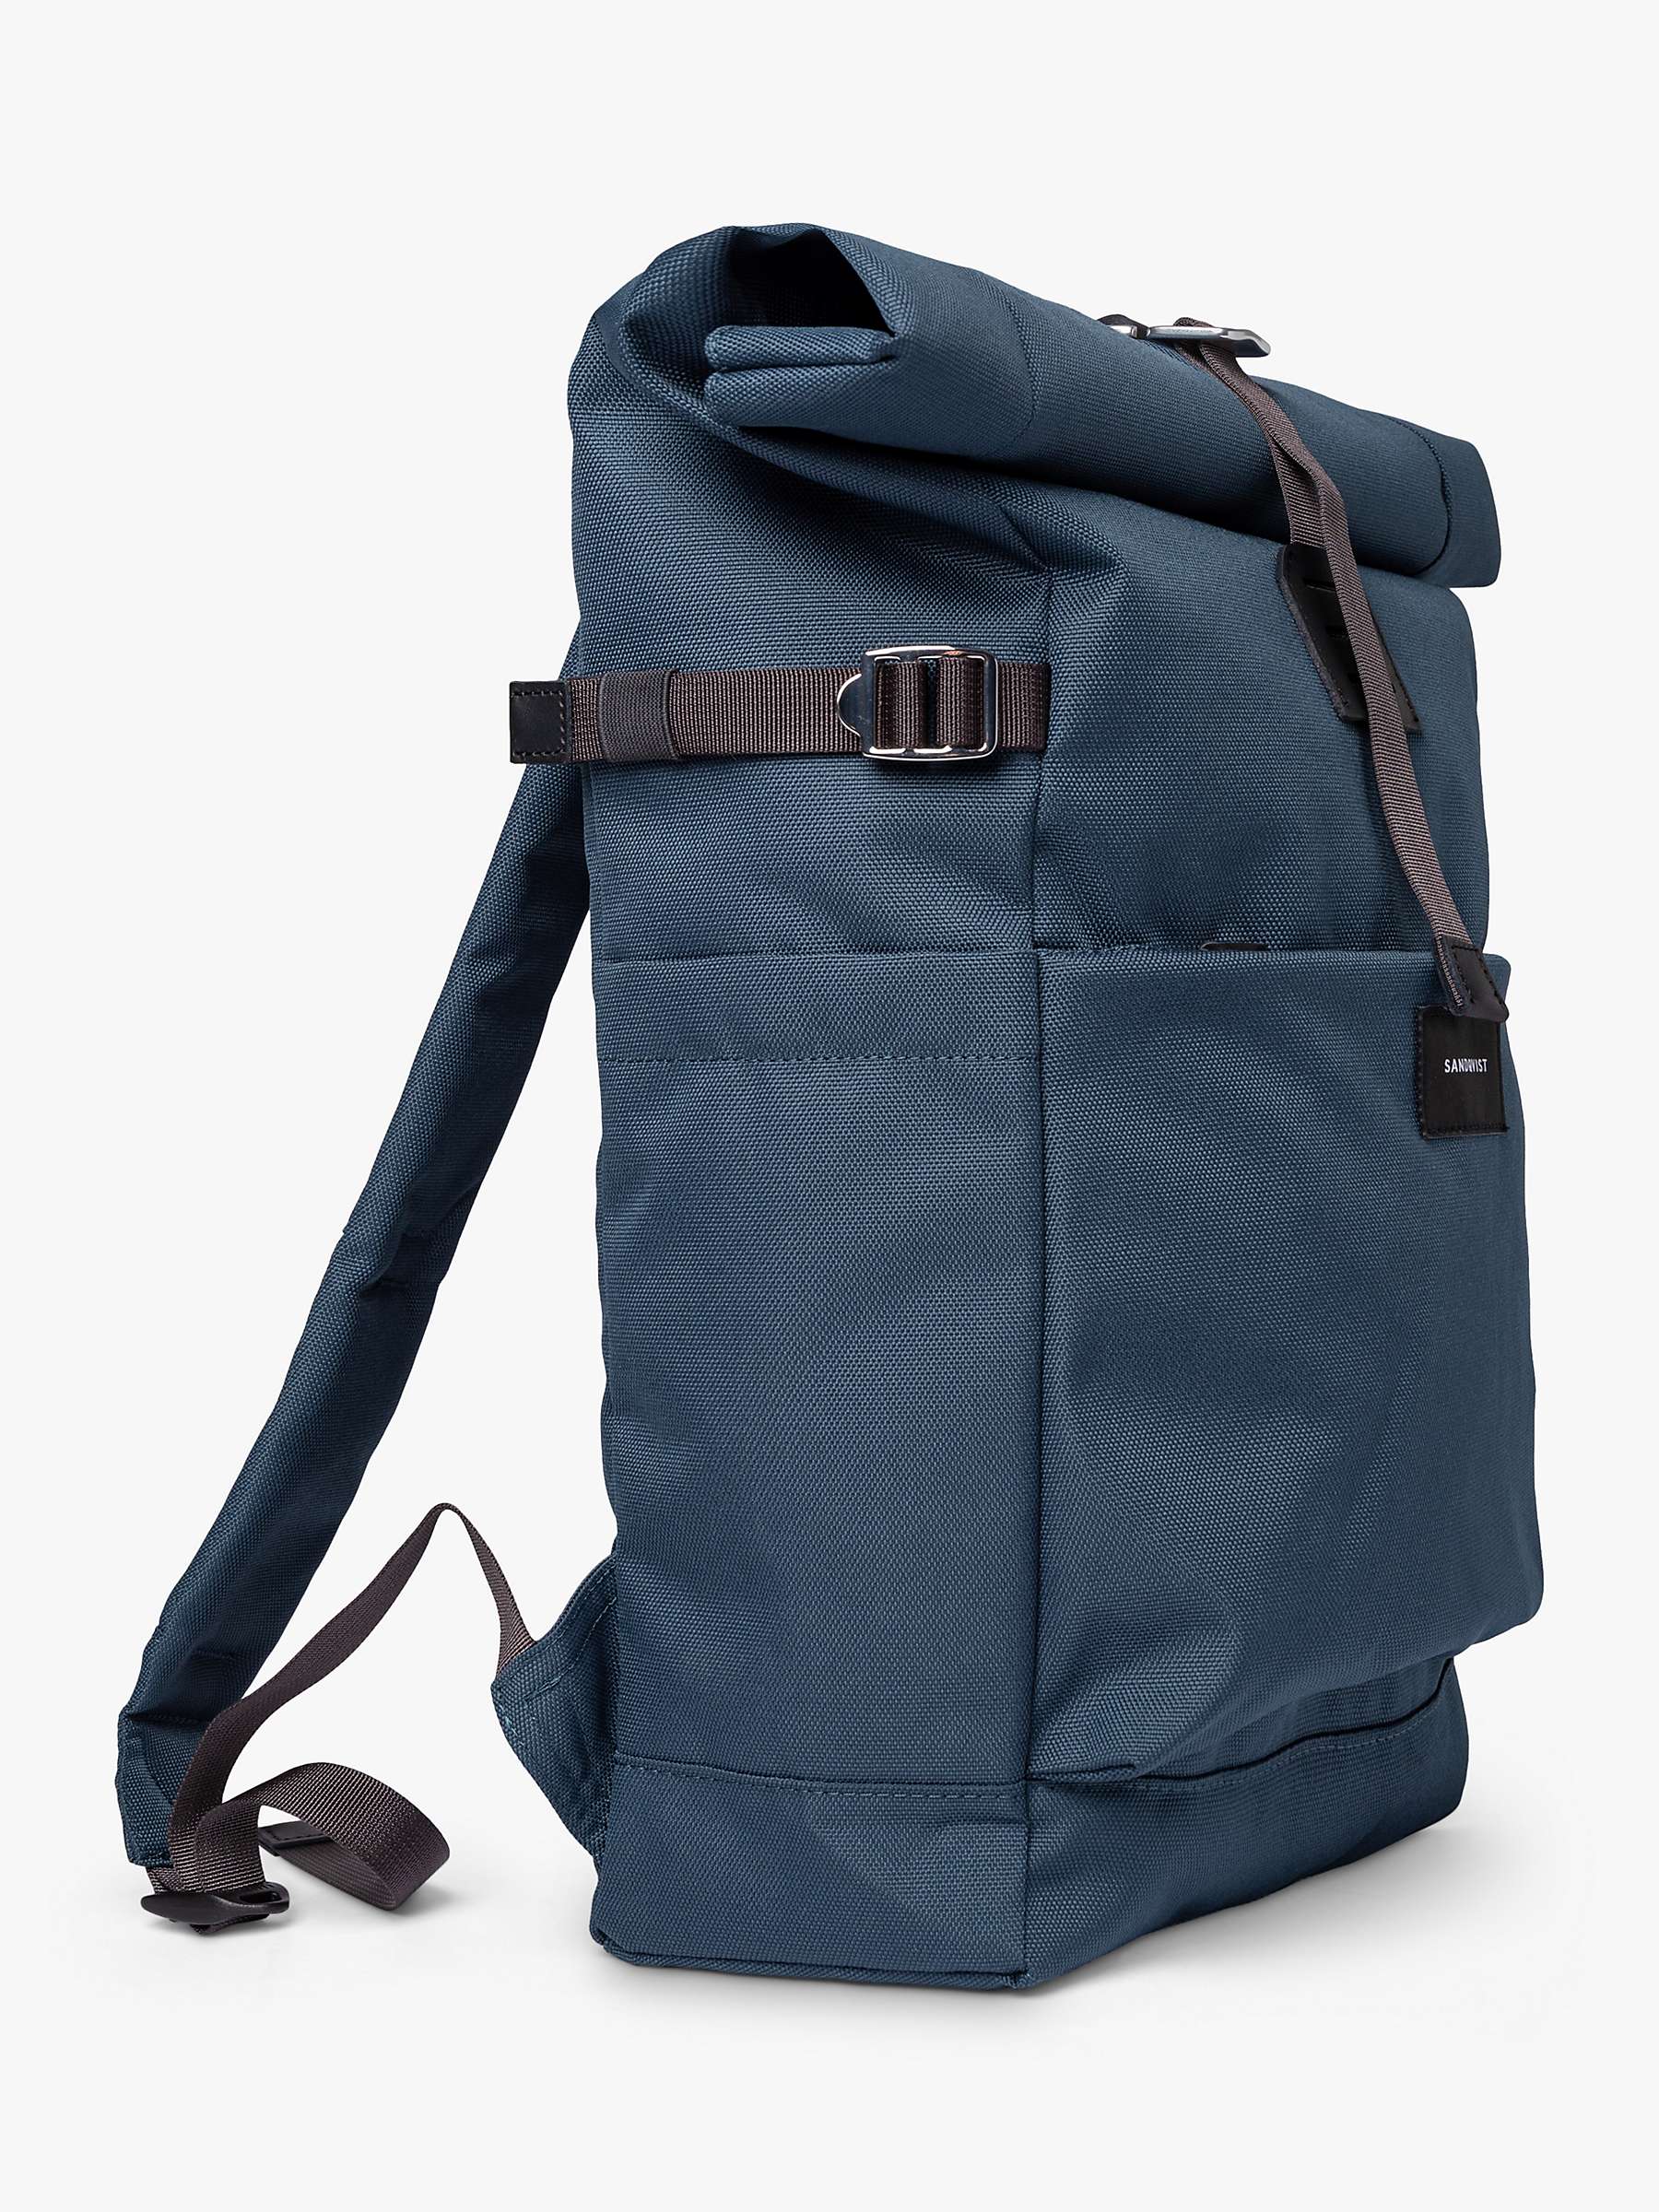 Buy Sandqvist Ilon Rolltop Backpack, Steel Blue Online at johnlewis.com